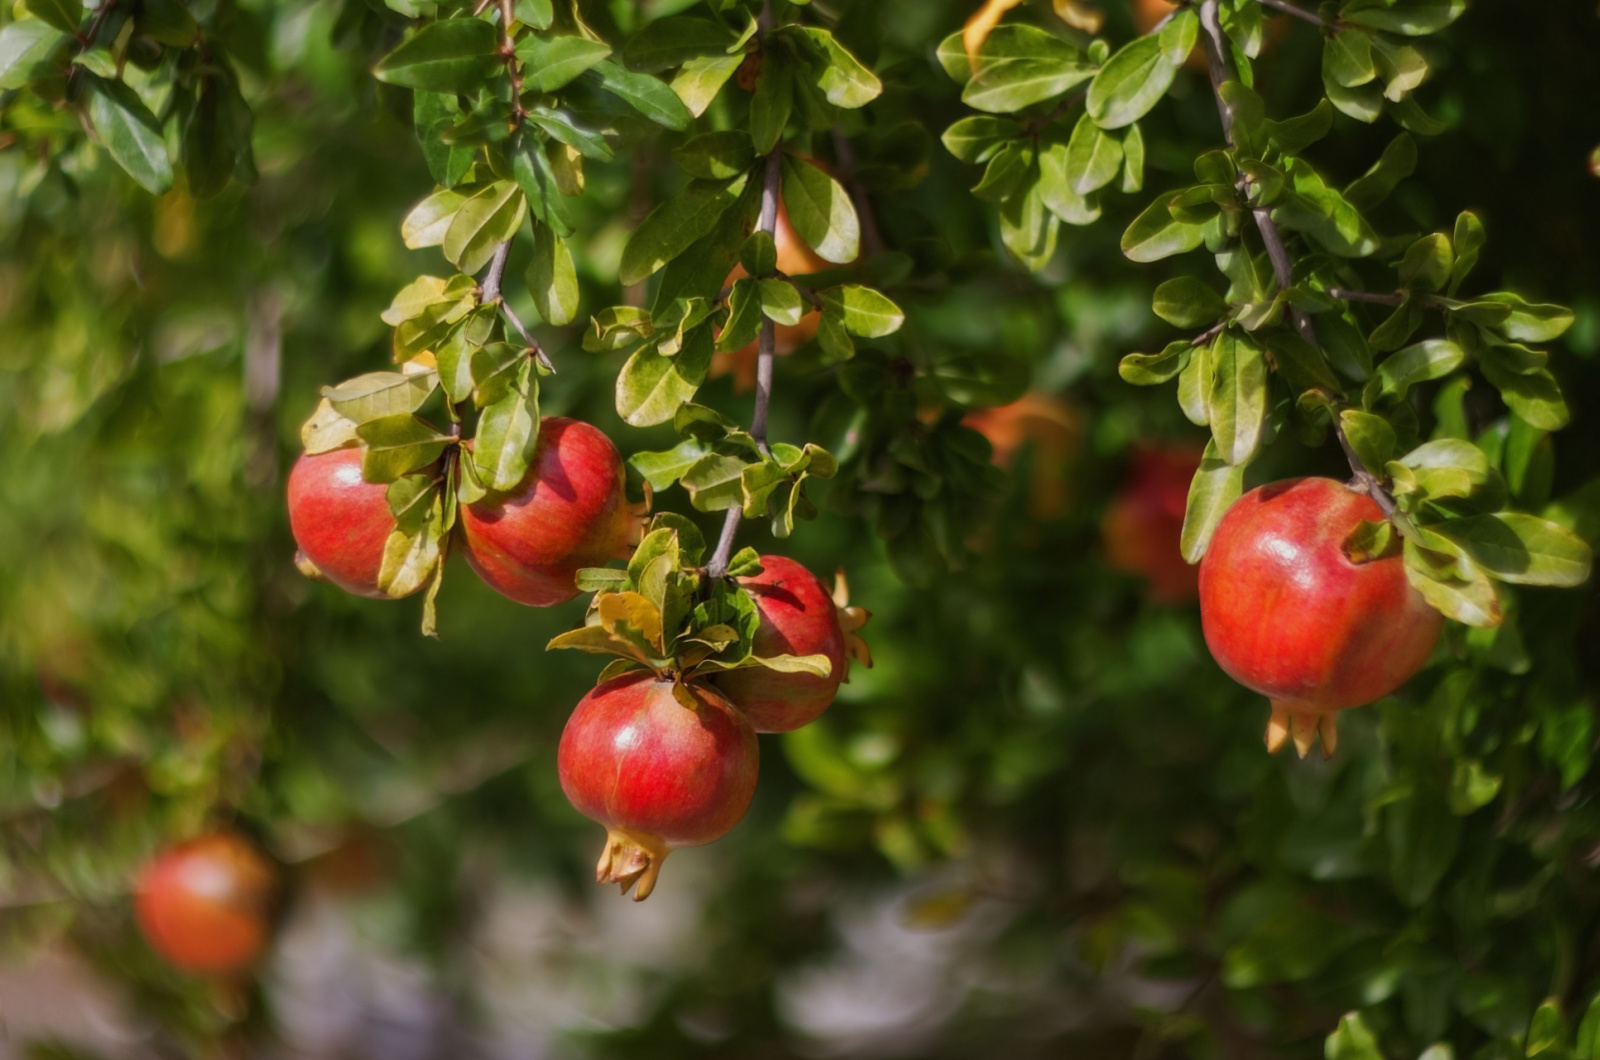 pomegranate fruits grow on pomegranate tree